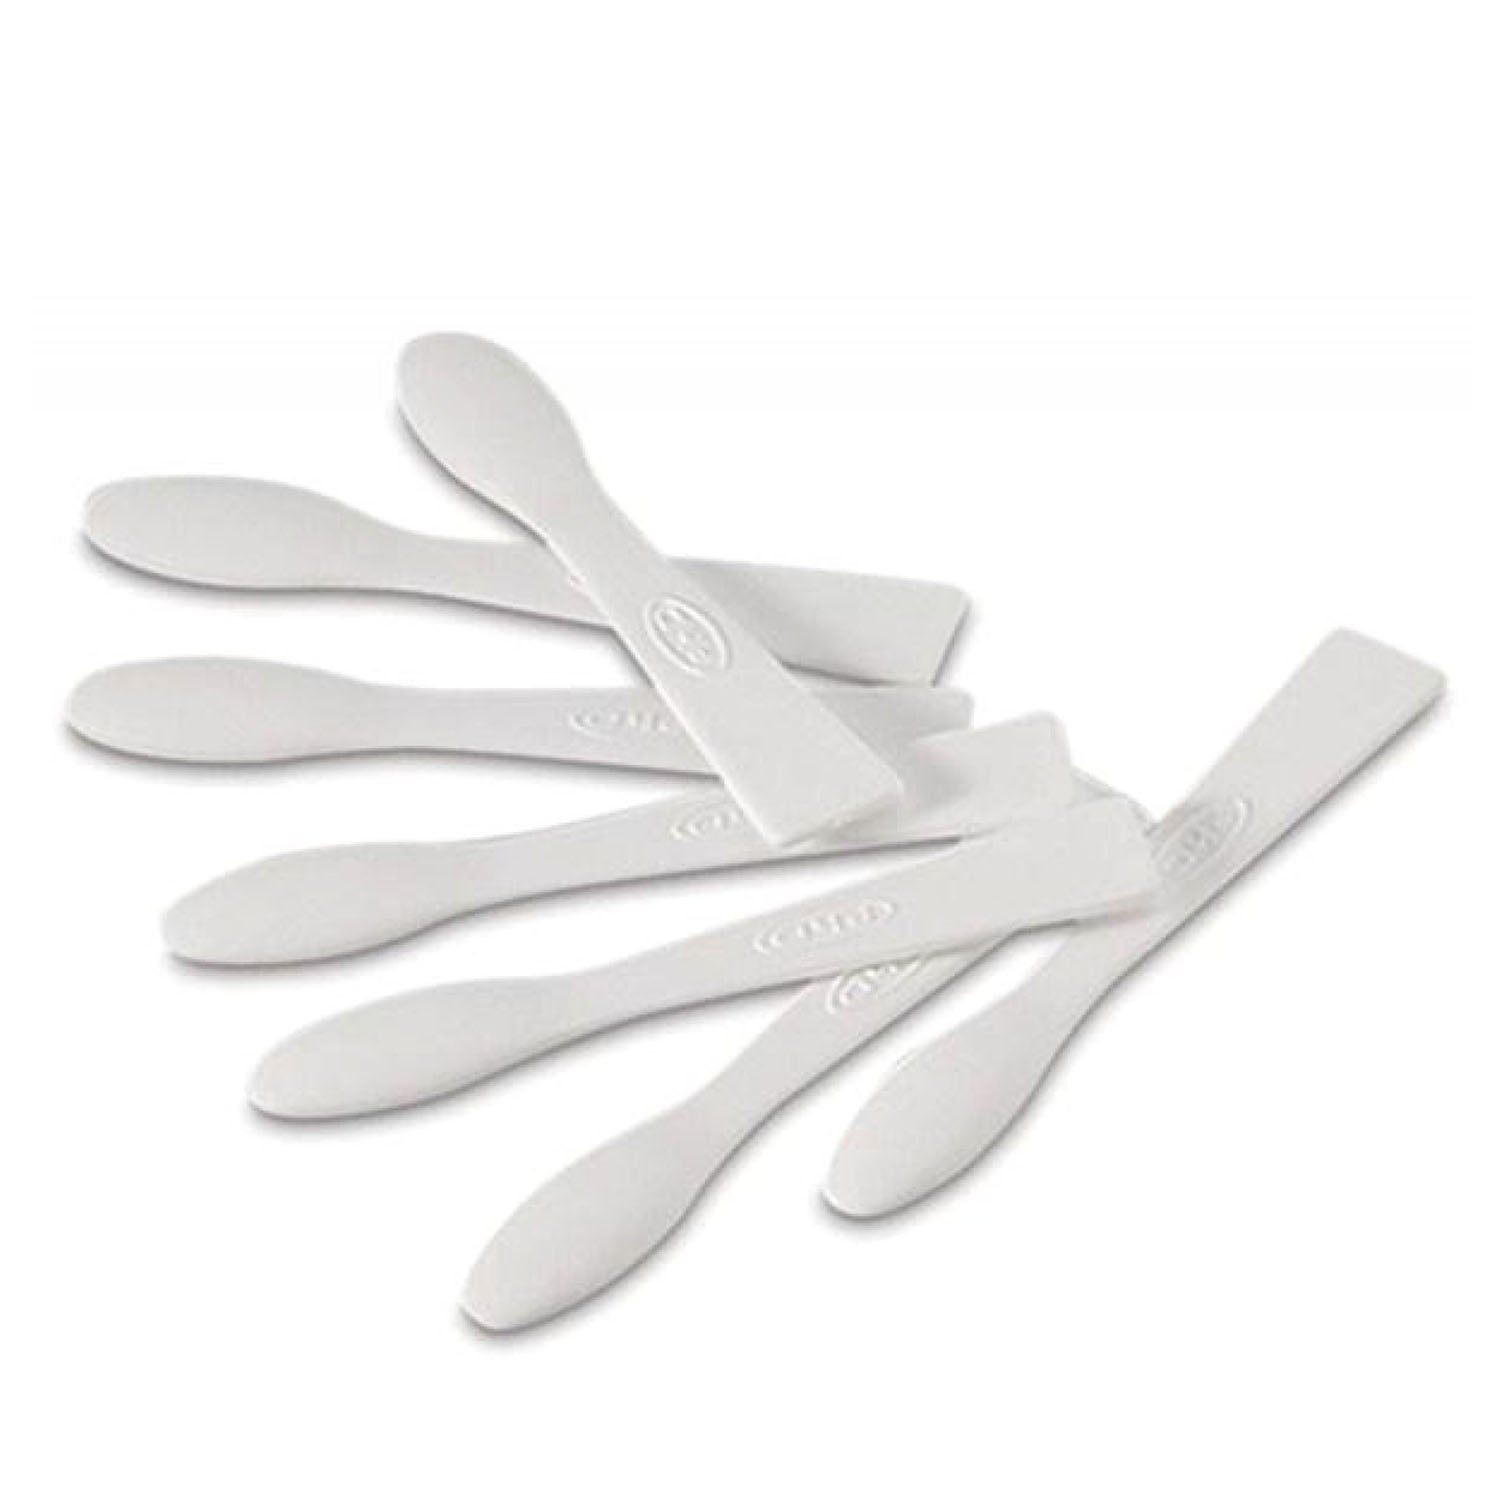 LASHEXTEND spatules en plastique